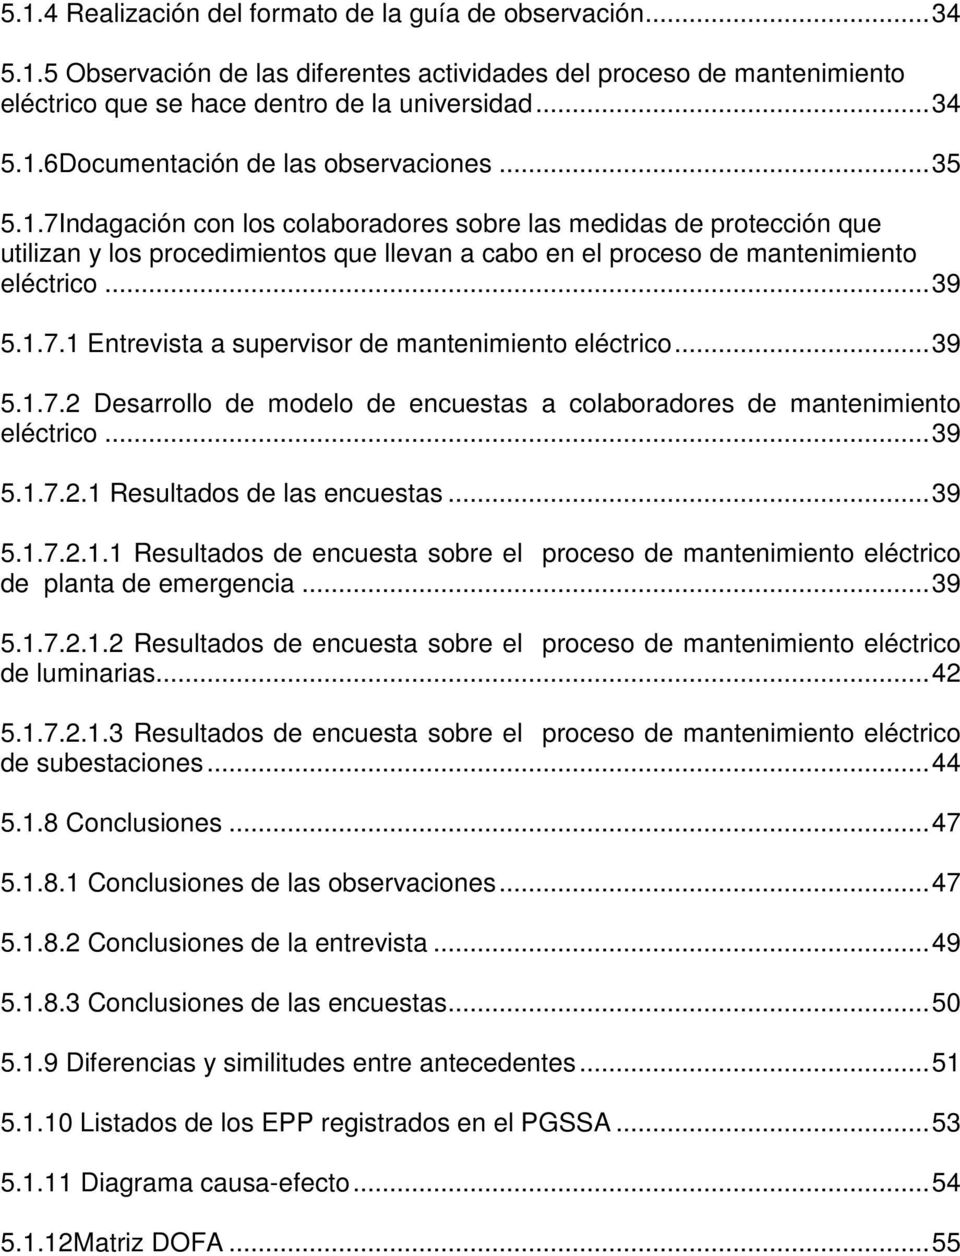 .. 39 5.1.7.2 Desarrollo de modelo de encuestas a colaboradores de mantenimiento eléctrico... 39 5.1.7.2.1 Resultados de las encuestas... 39 5.1.7.2.1.1 Resultados de encuesta sobre el proceso de mantenimiento eléctrico de planta de emergencia.